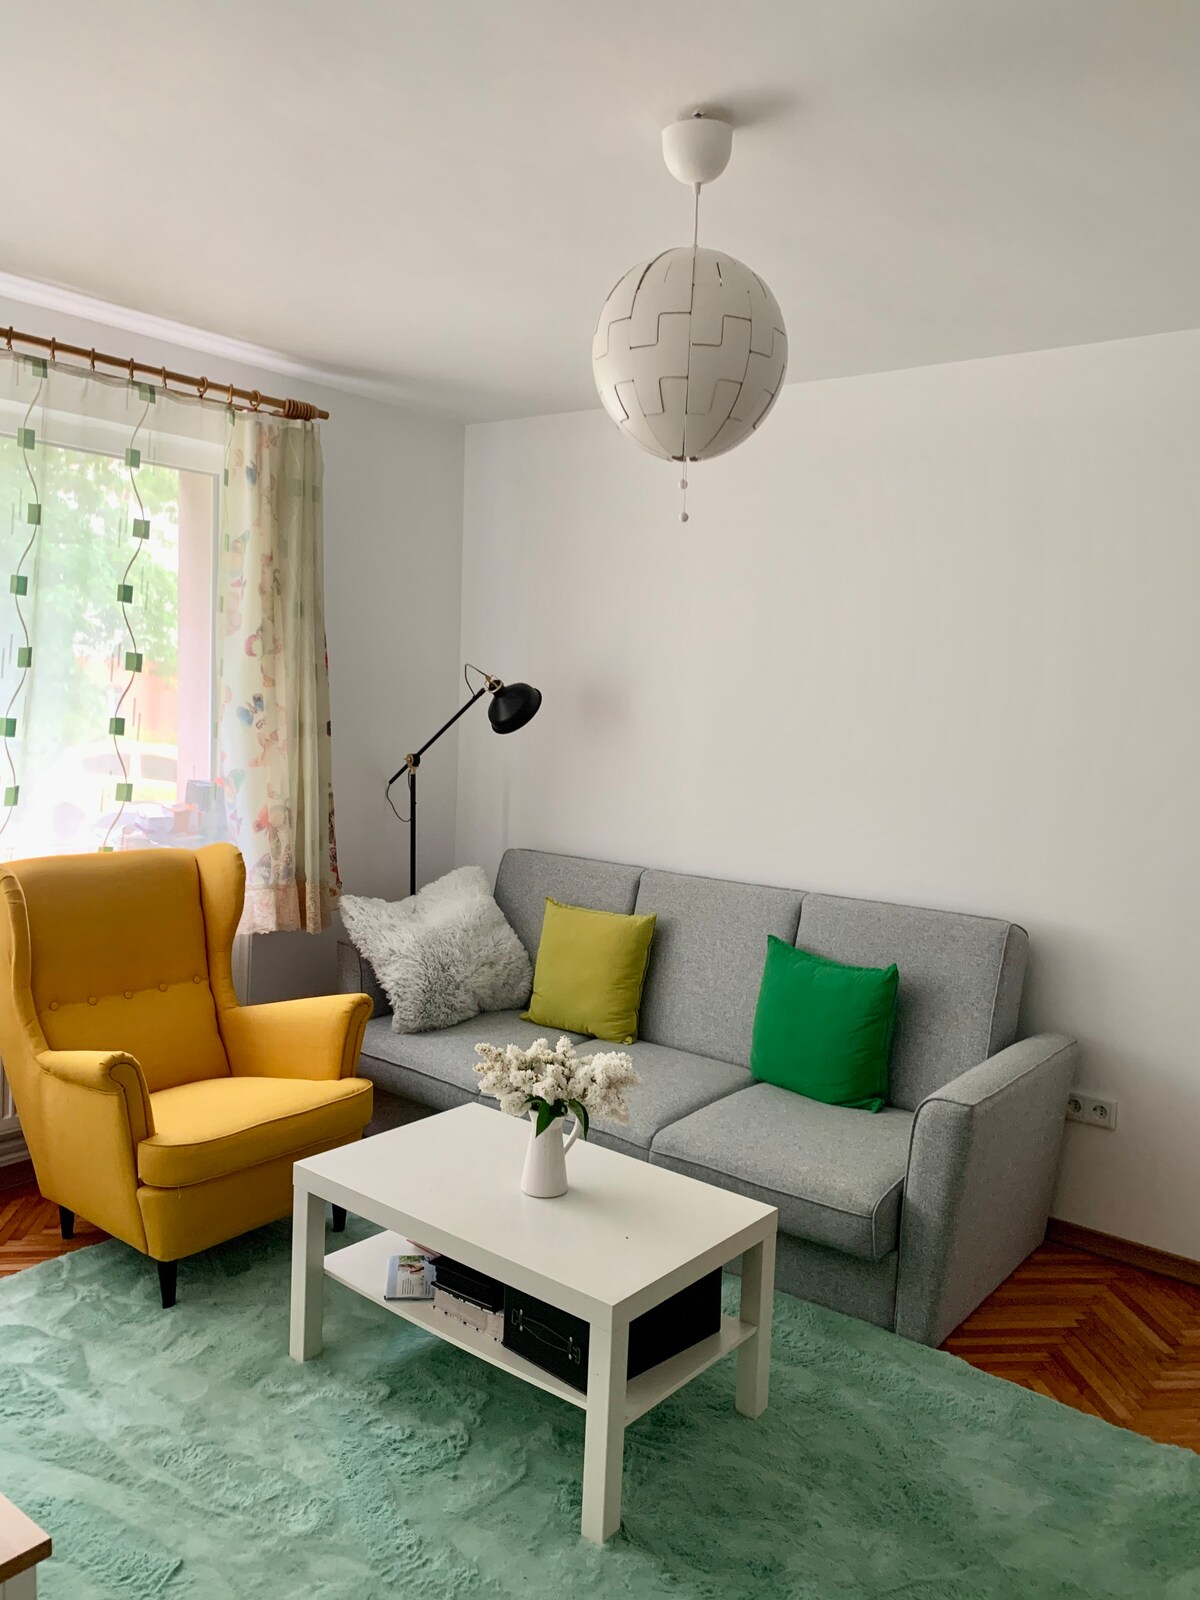 Shared little flat in Baia Mare